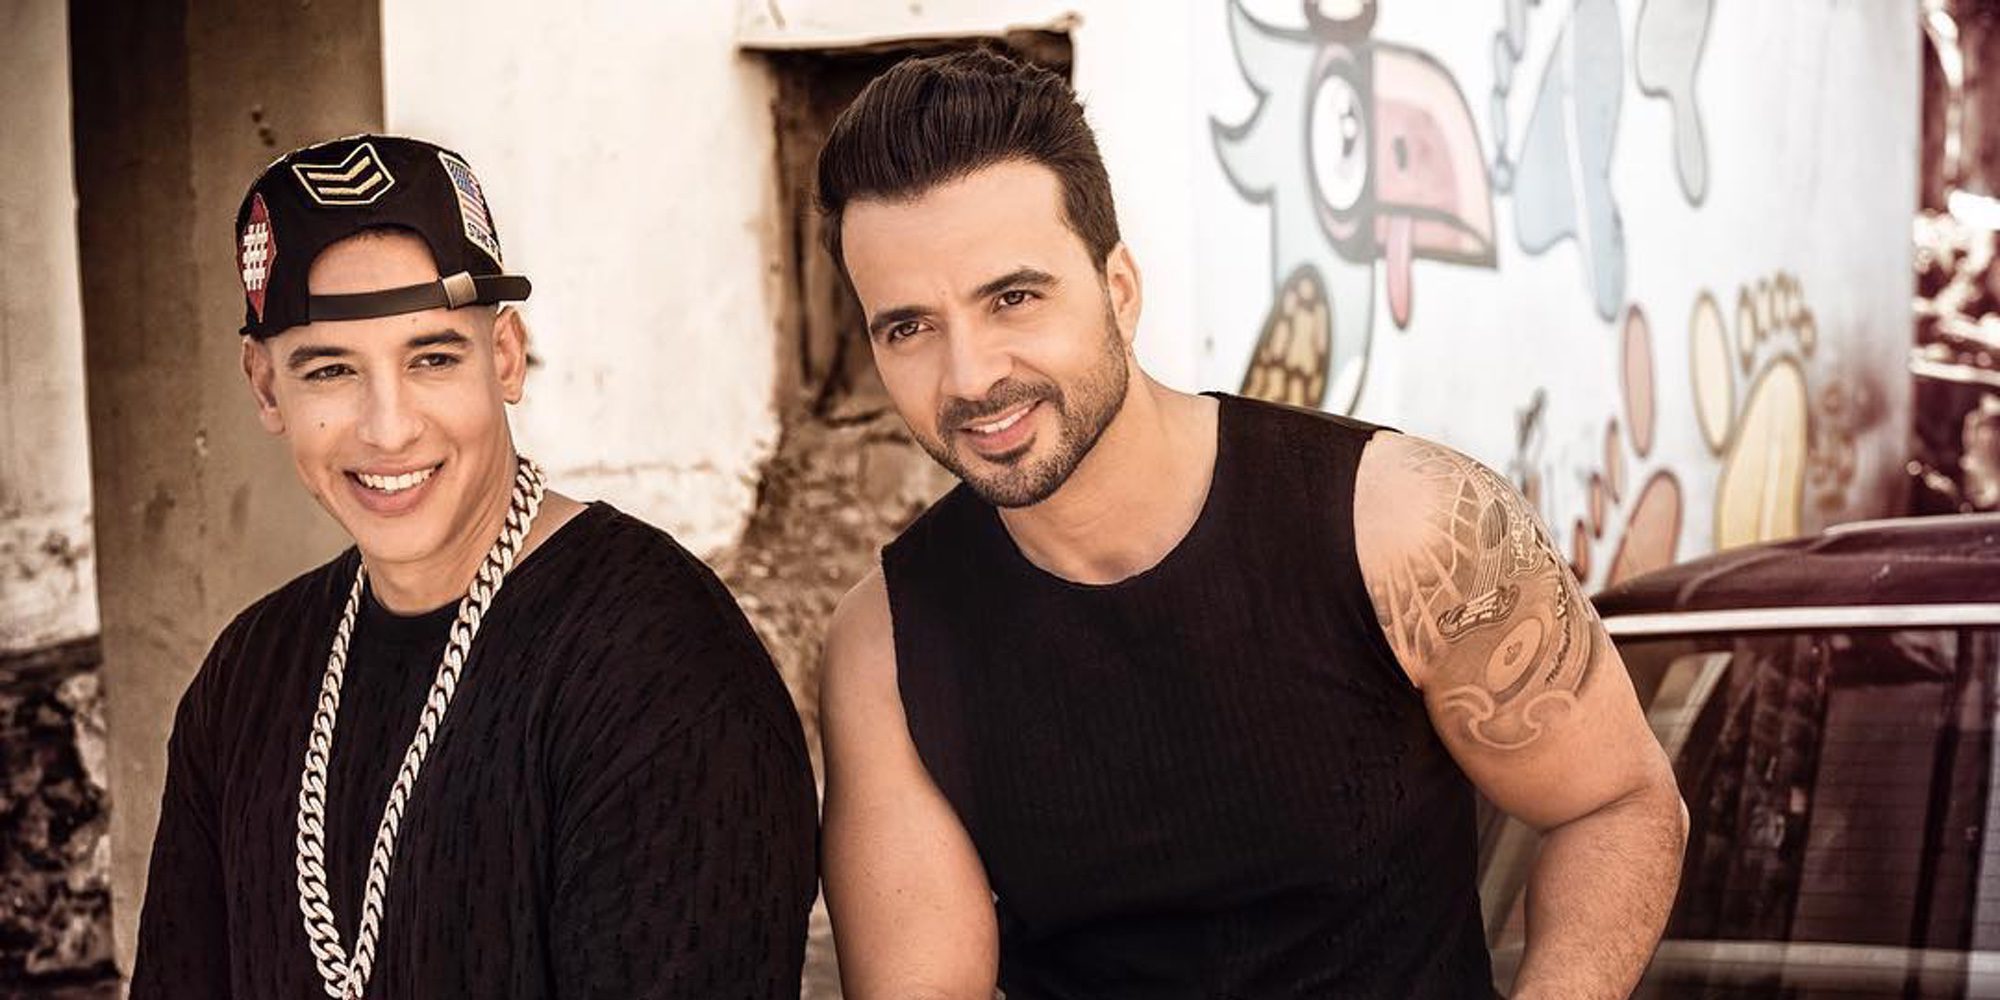 Luis Fonsi y Daddy Yankee ayudan a la recuperación de Puerto Rico gracias al éxito de 'Despacito'